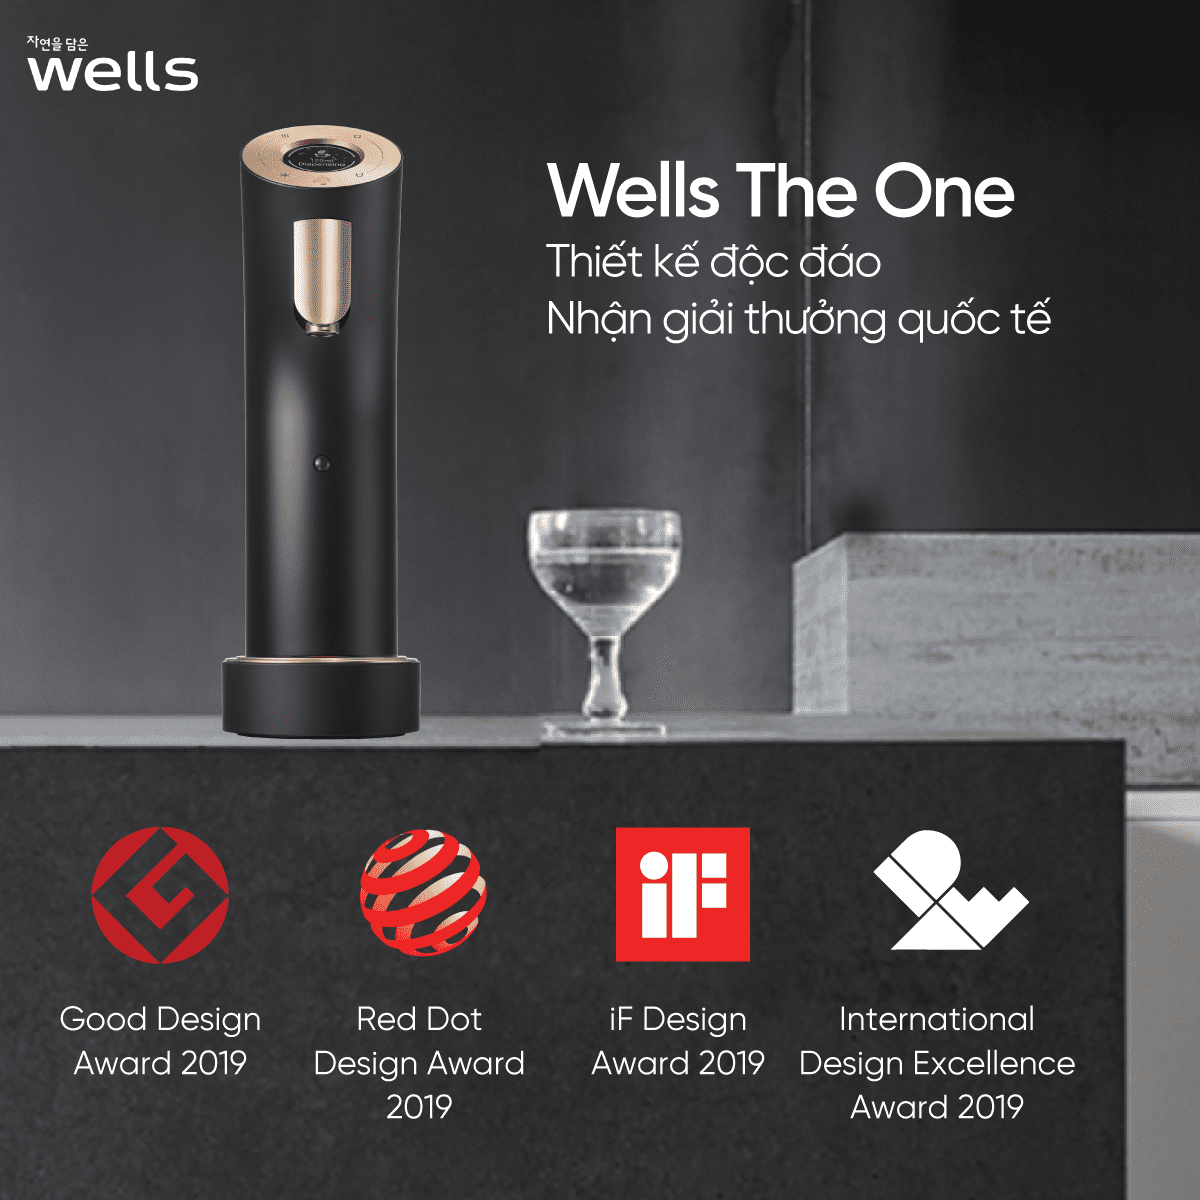 ảnh sản phẩm máy lọc nước cao cấp số 1 thế giới wells the one (2)